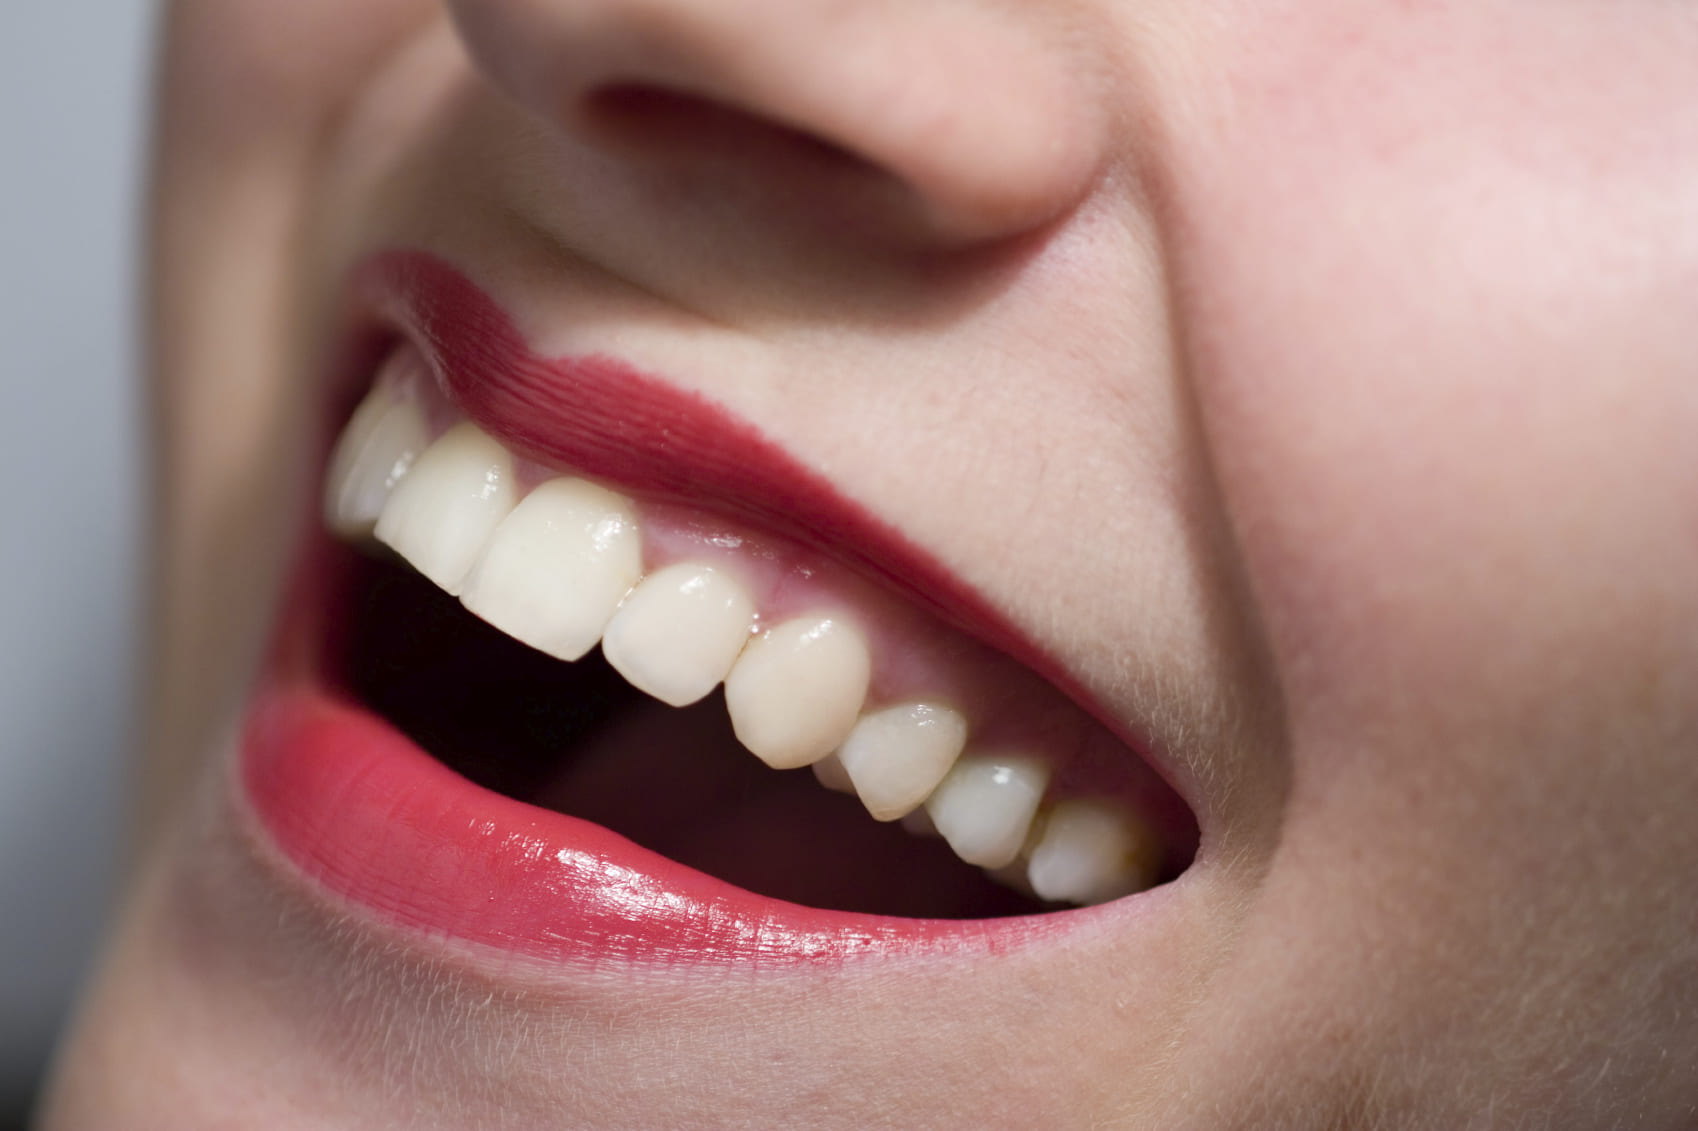 Diş eti hastalıkları belirtileri, en çok görülen diş hastalığı nedir? Diş eti hastalığı kanser belirtisi olabilir!10